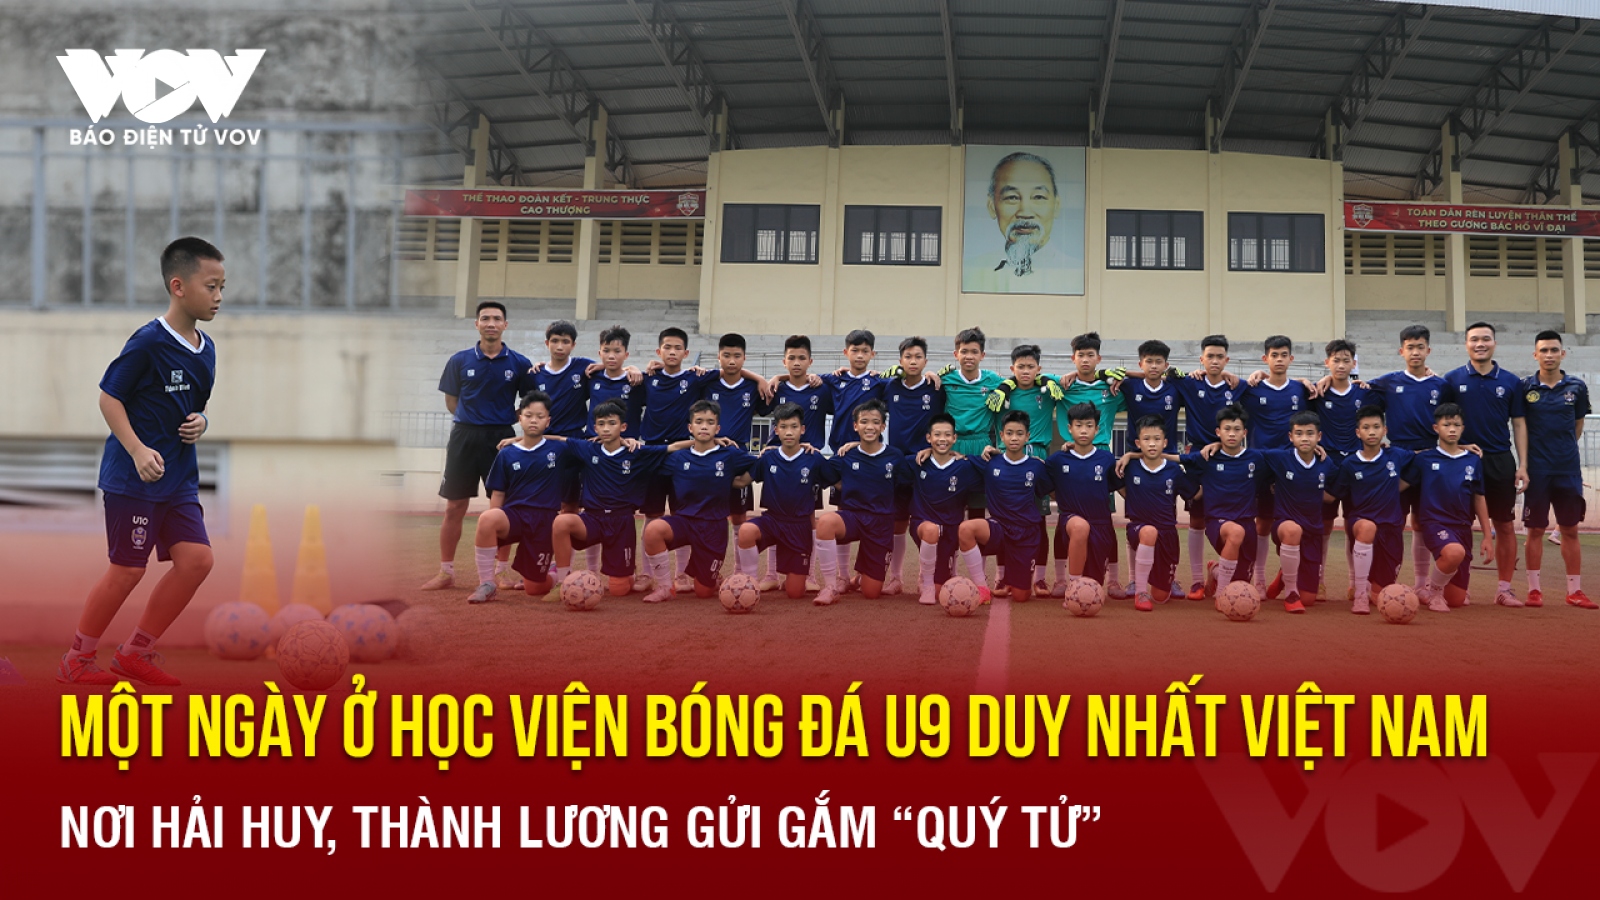 Một ngày ở học viện bóng đá U9 duy nhất Việt Nam nơi Hải Huy, Thành Lương gửi gắm “quý tử”